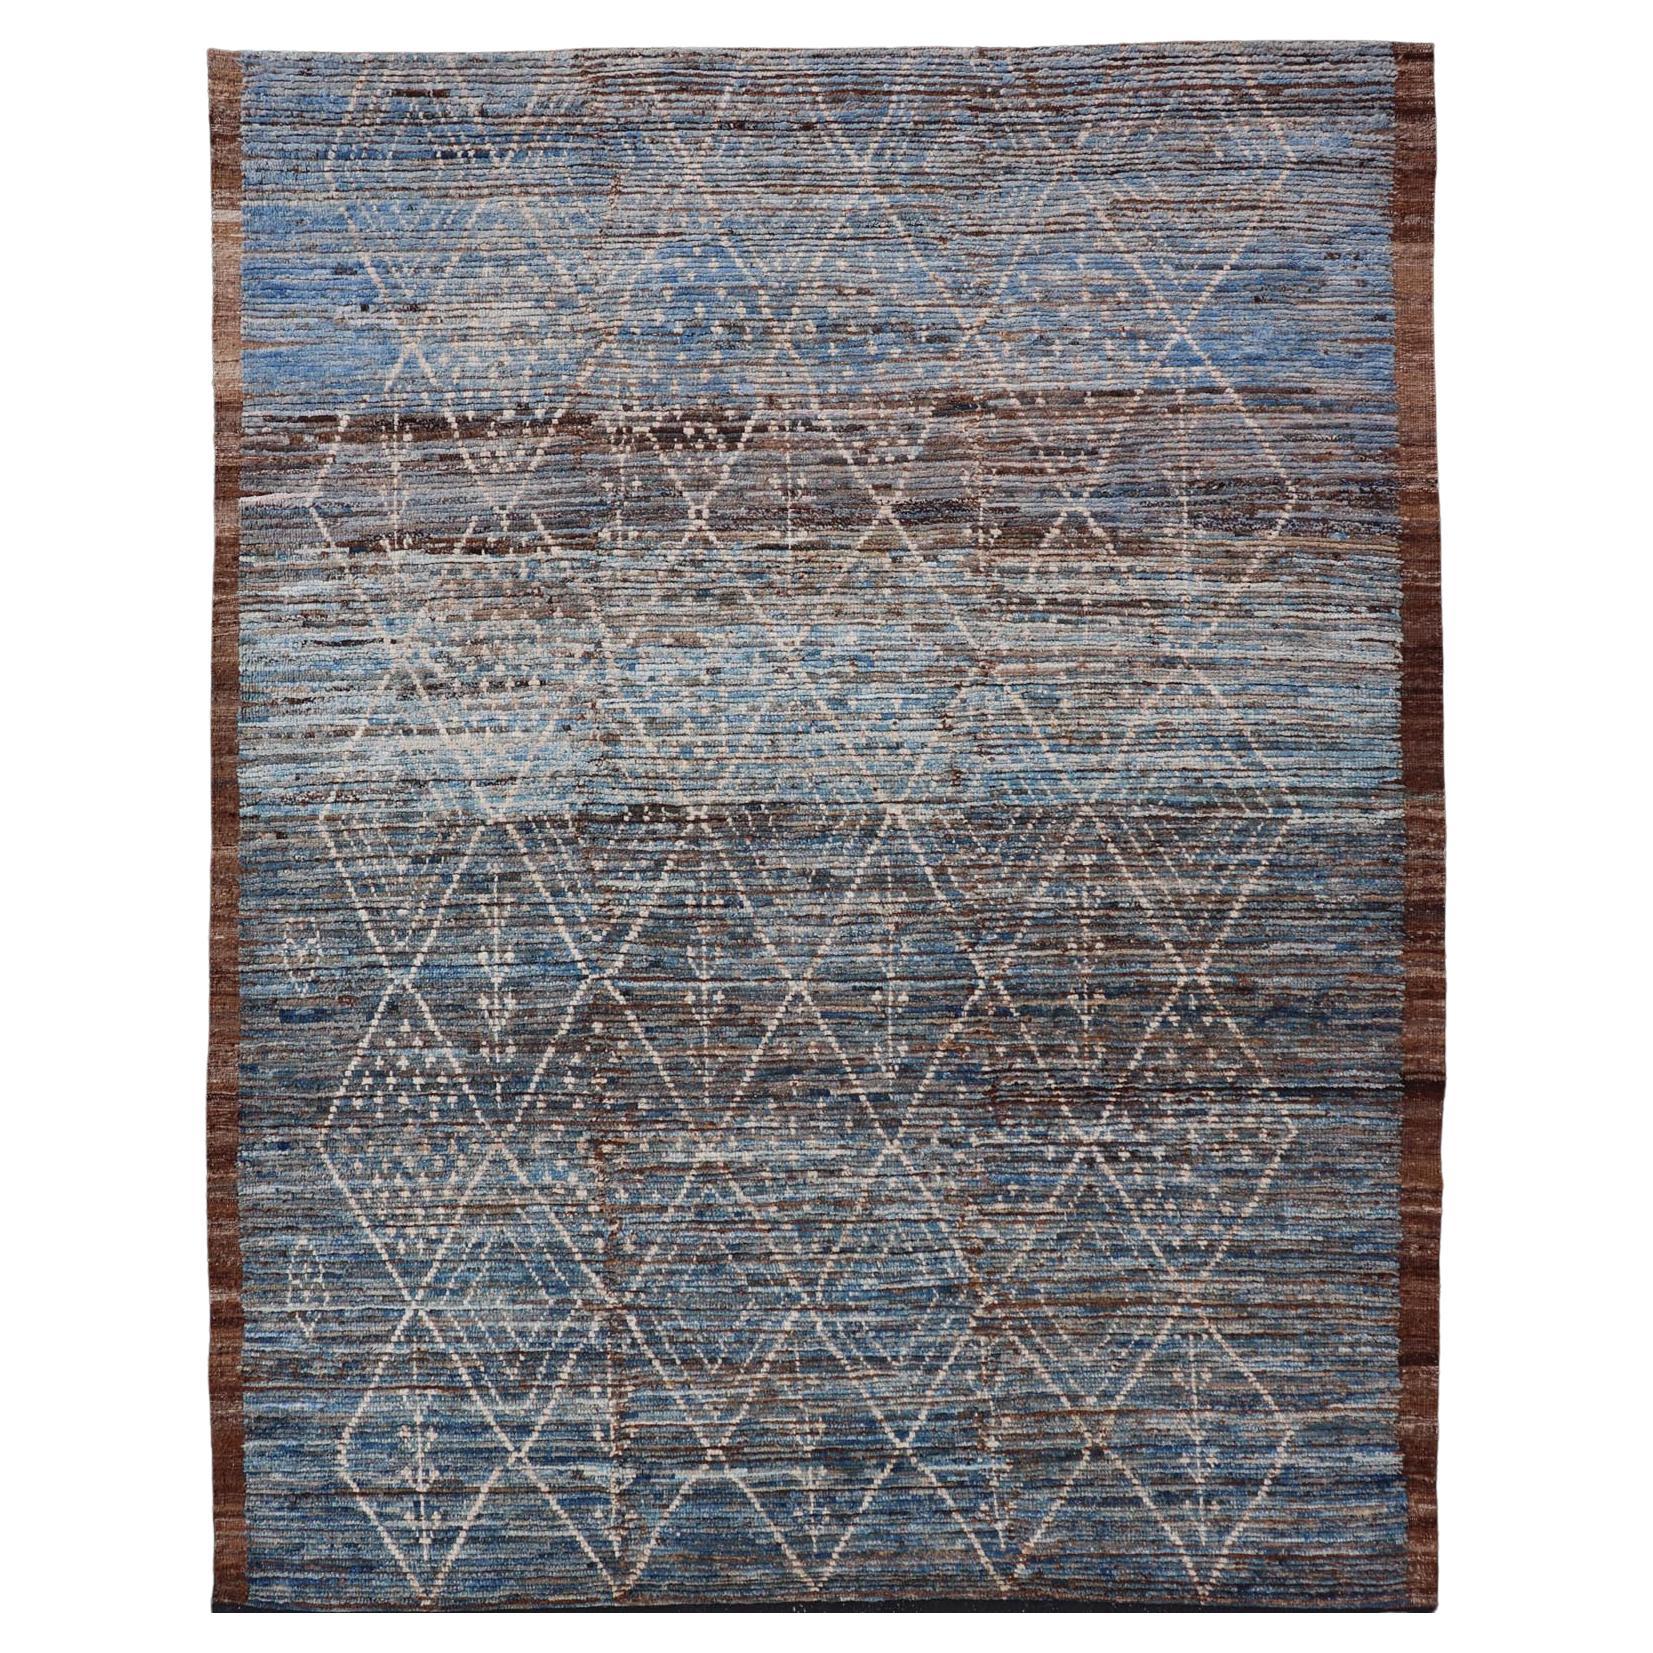 Moderner Stammesteppich aus Wolle mit subgeometrischem Design in Dunkelblau, Tan und Elfenbein